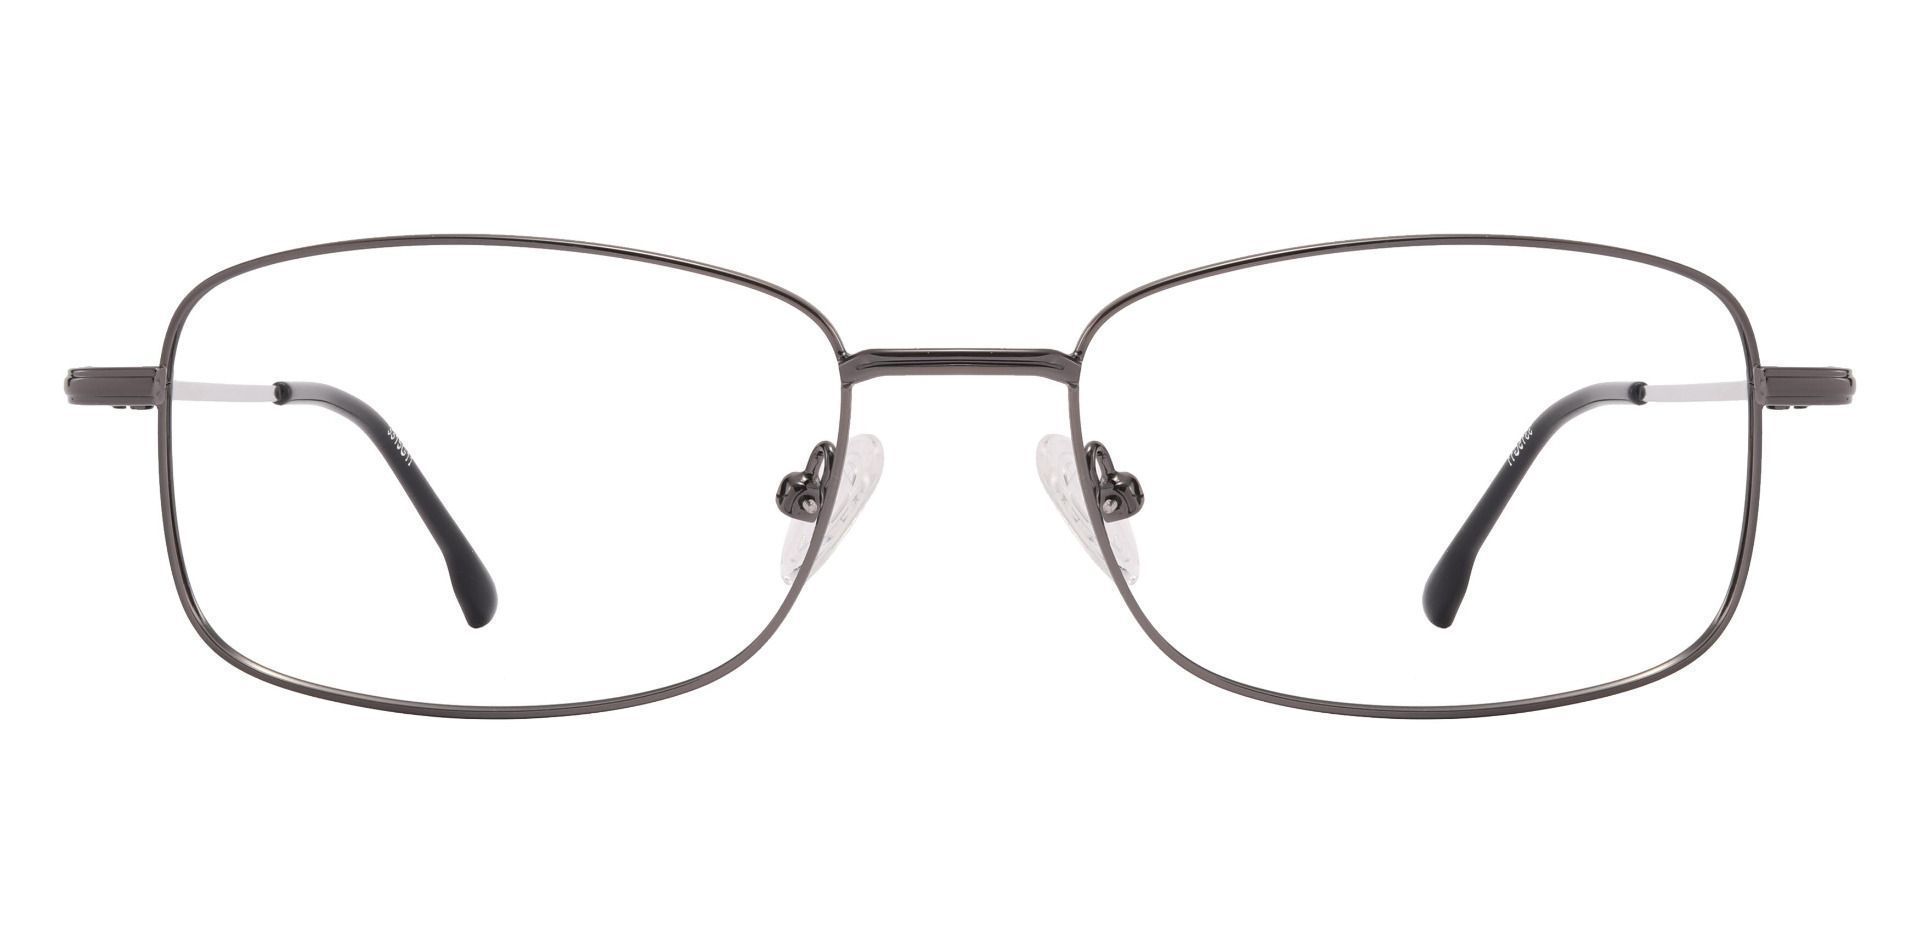 Turpin Rectangle Non-Rx Glasses - Gray